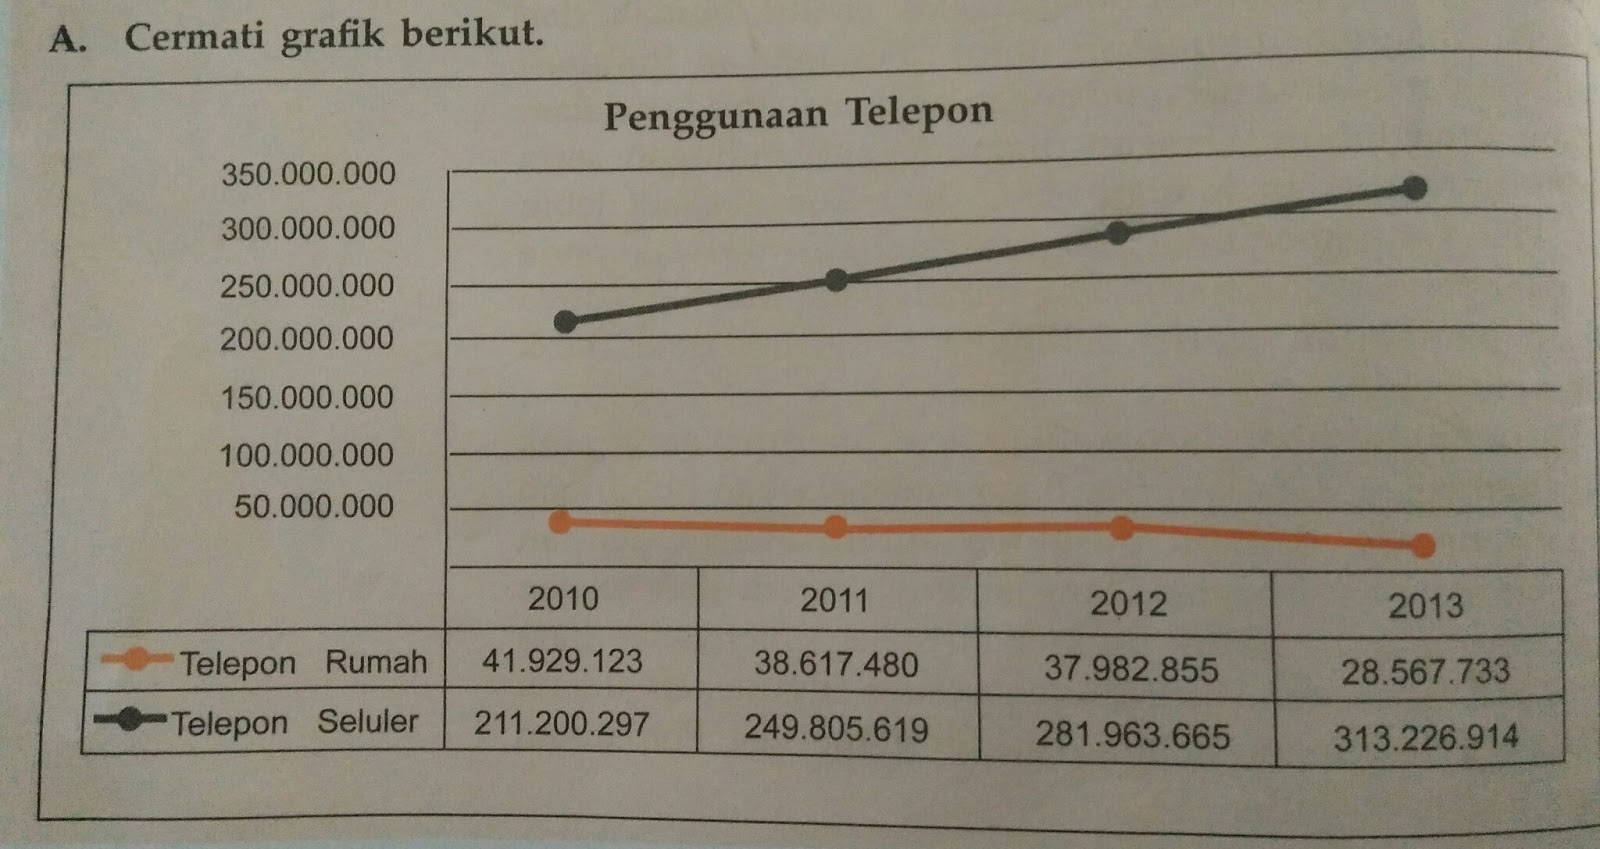 Banyak pengguna telepon seluler di indonesia akan mencapai angka 78,6 juta pada tahun